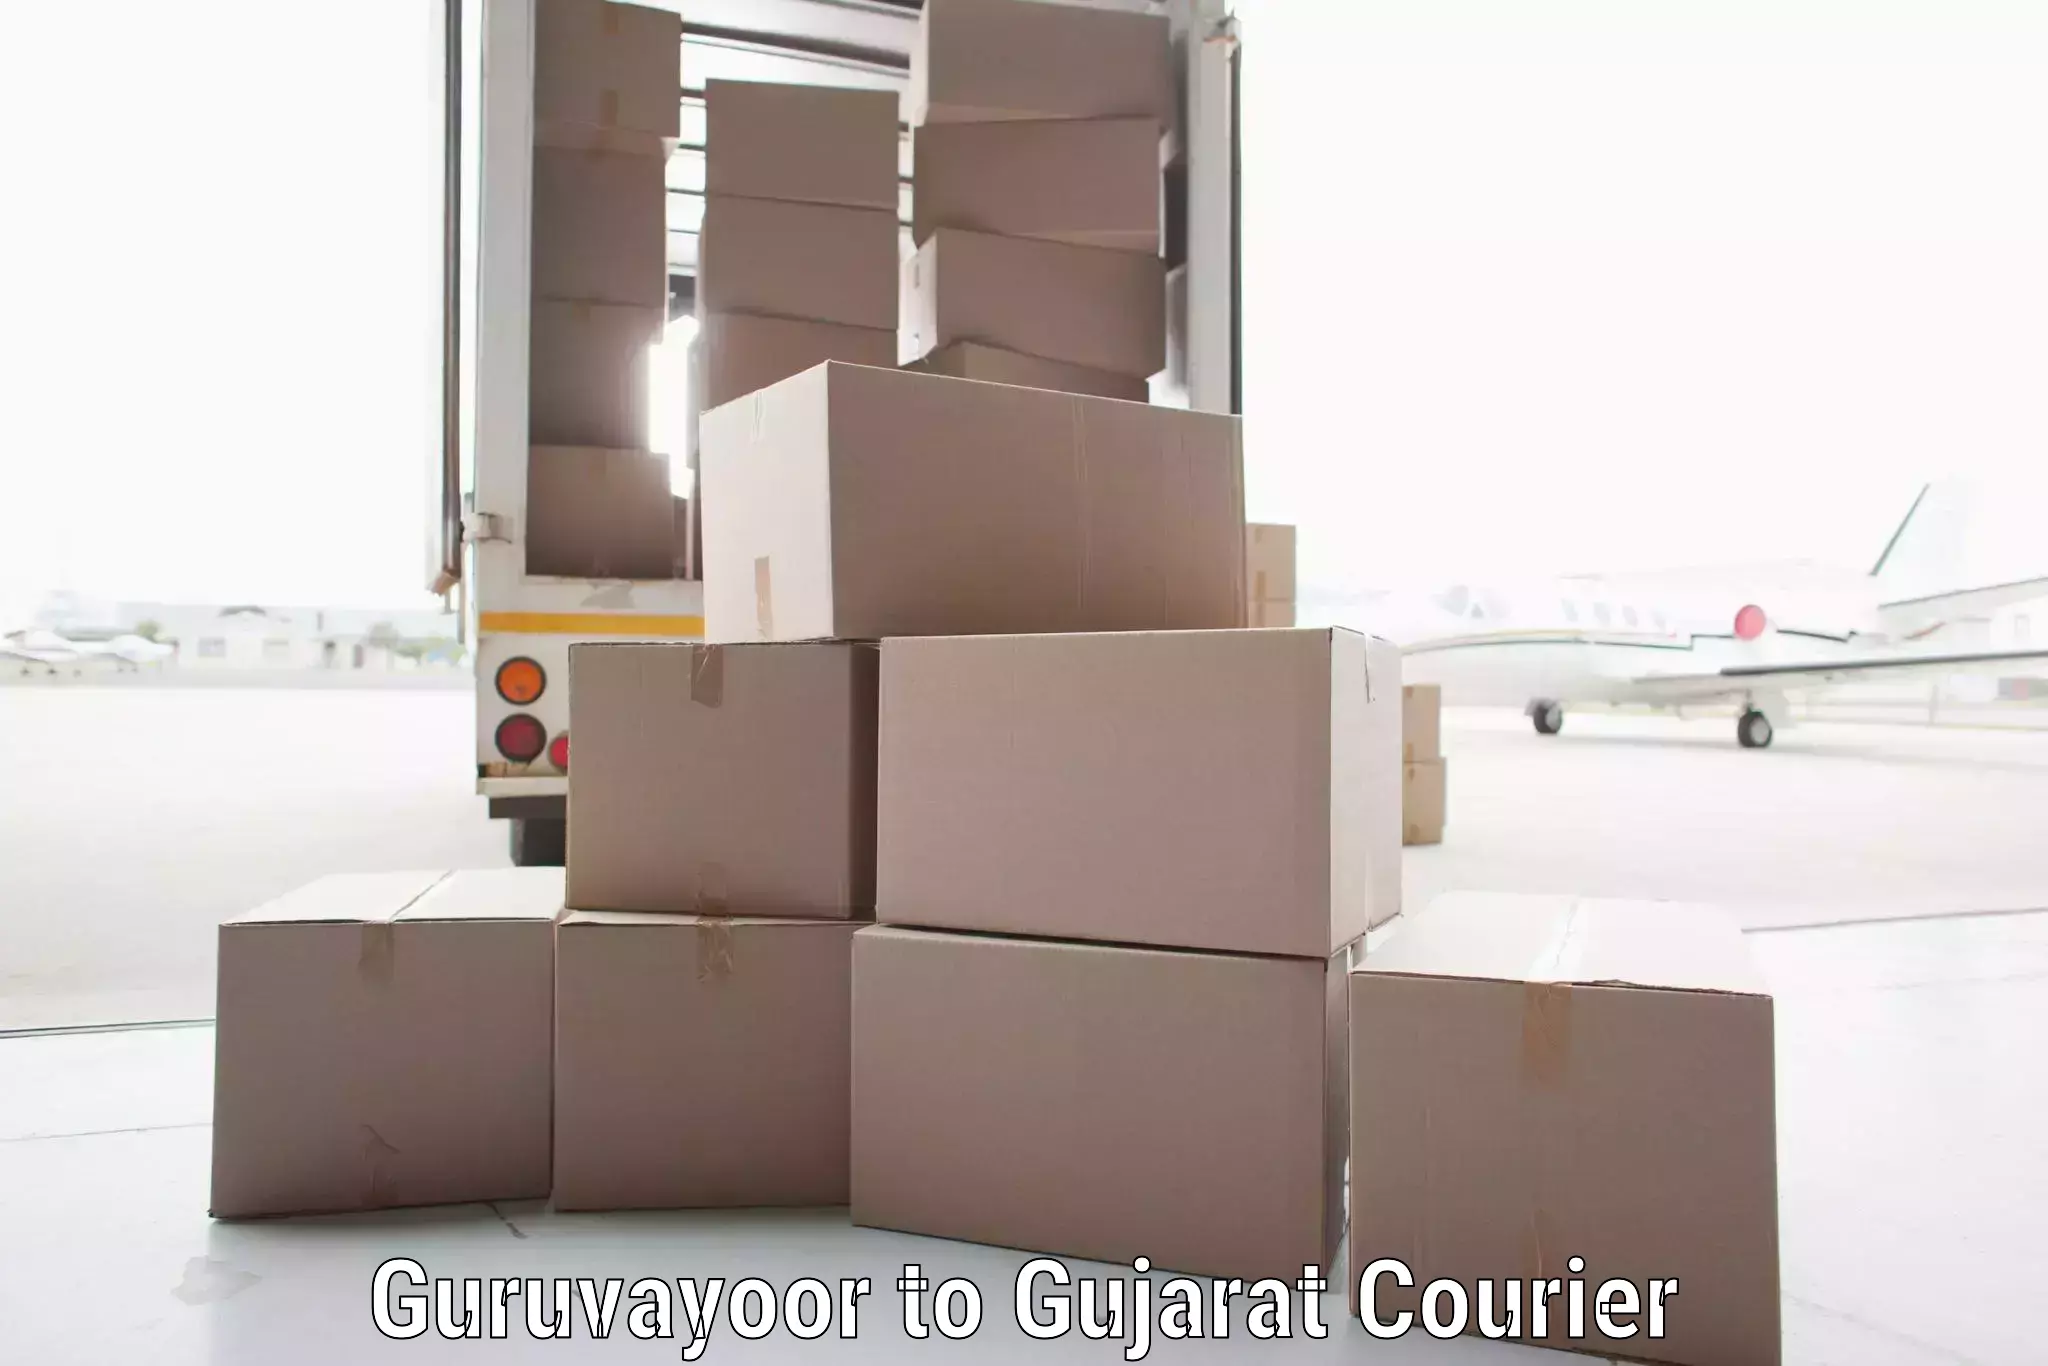 Modern courier technology in Guruvayoor to Gujarat